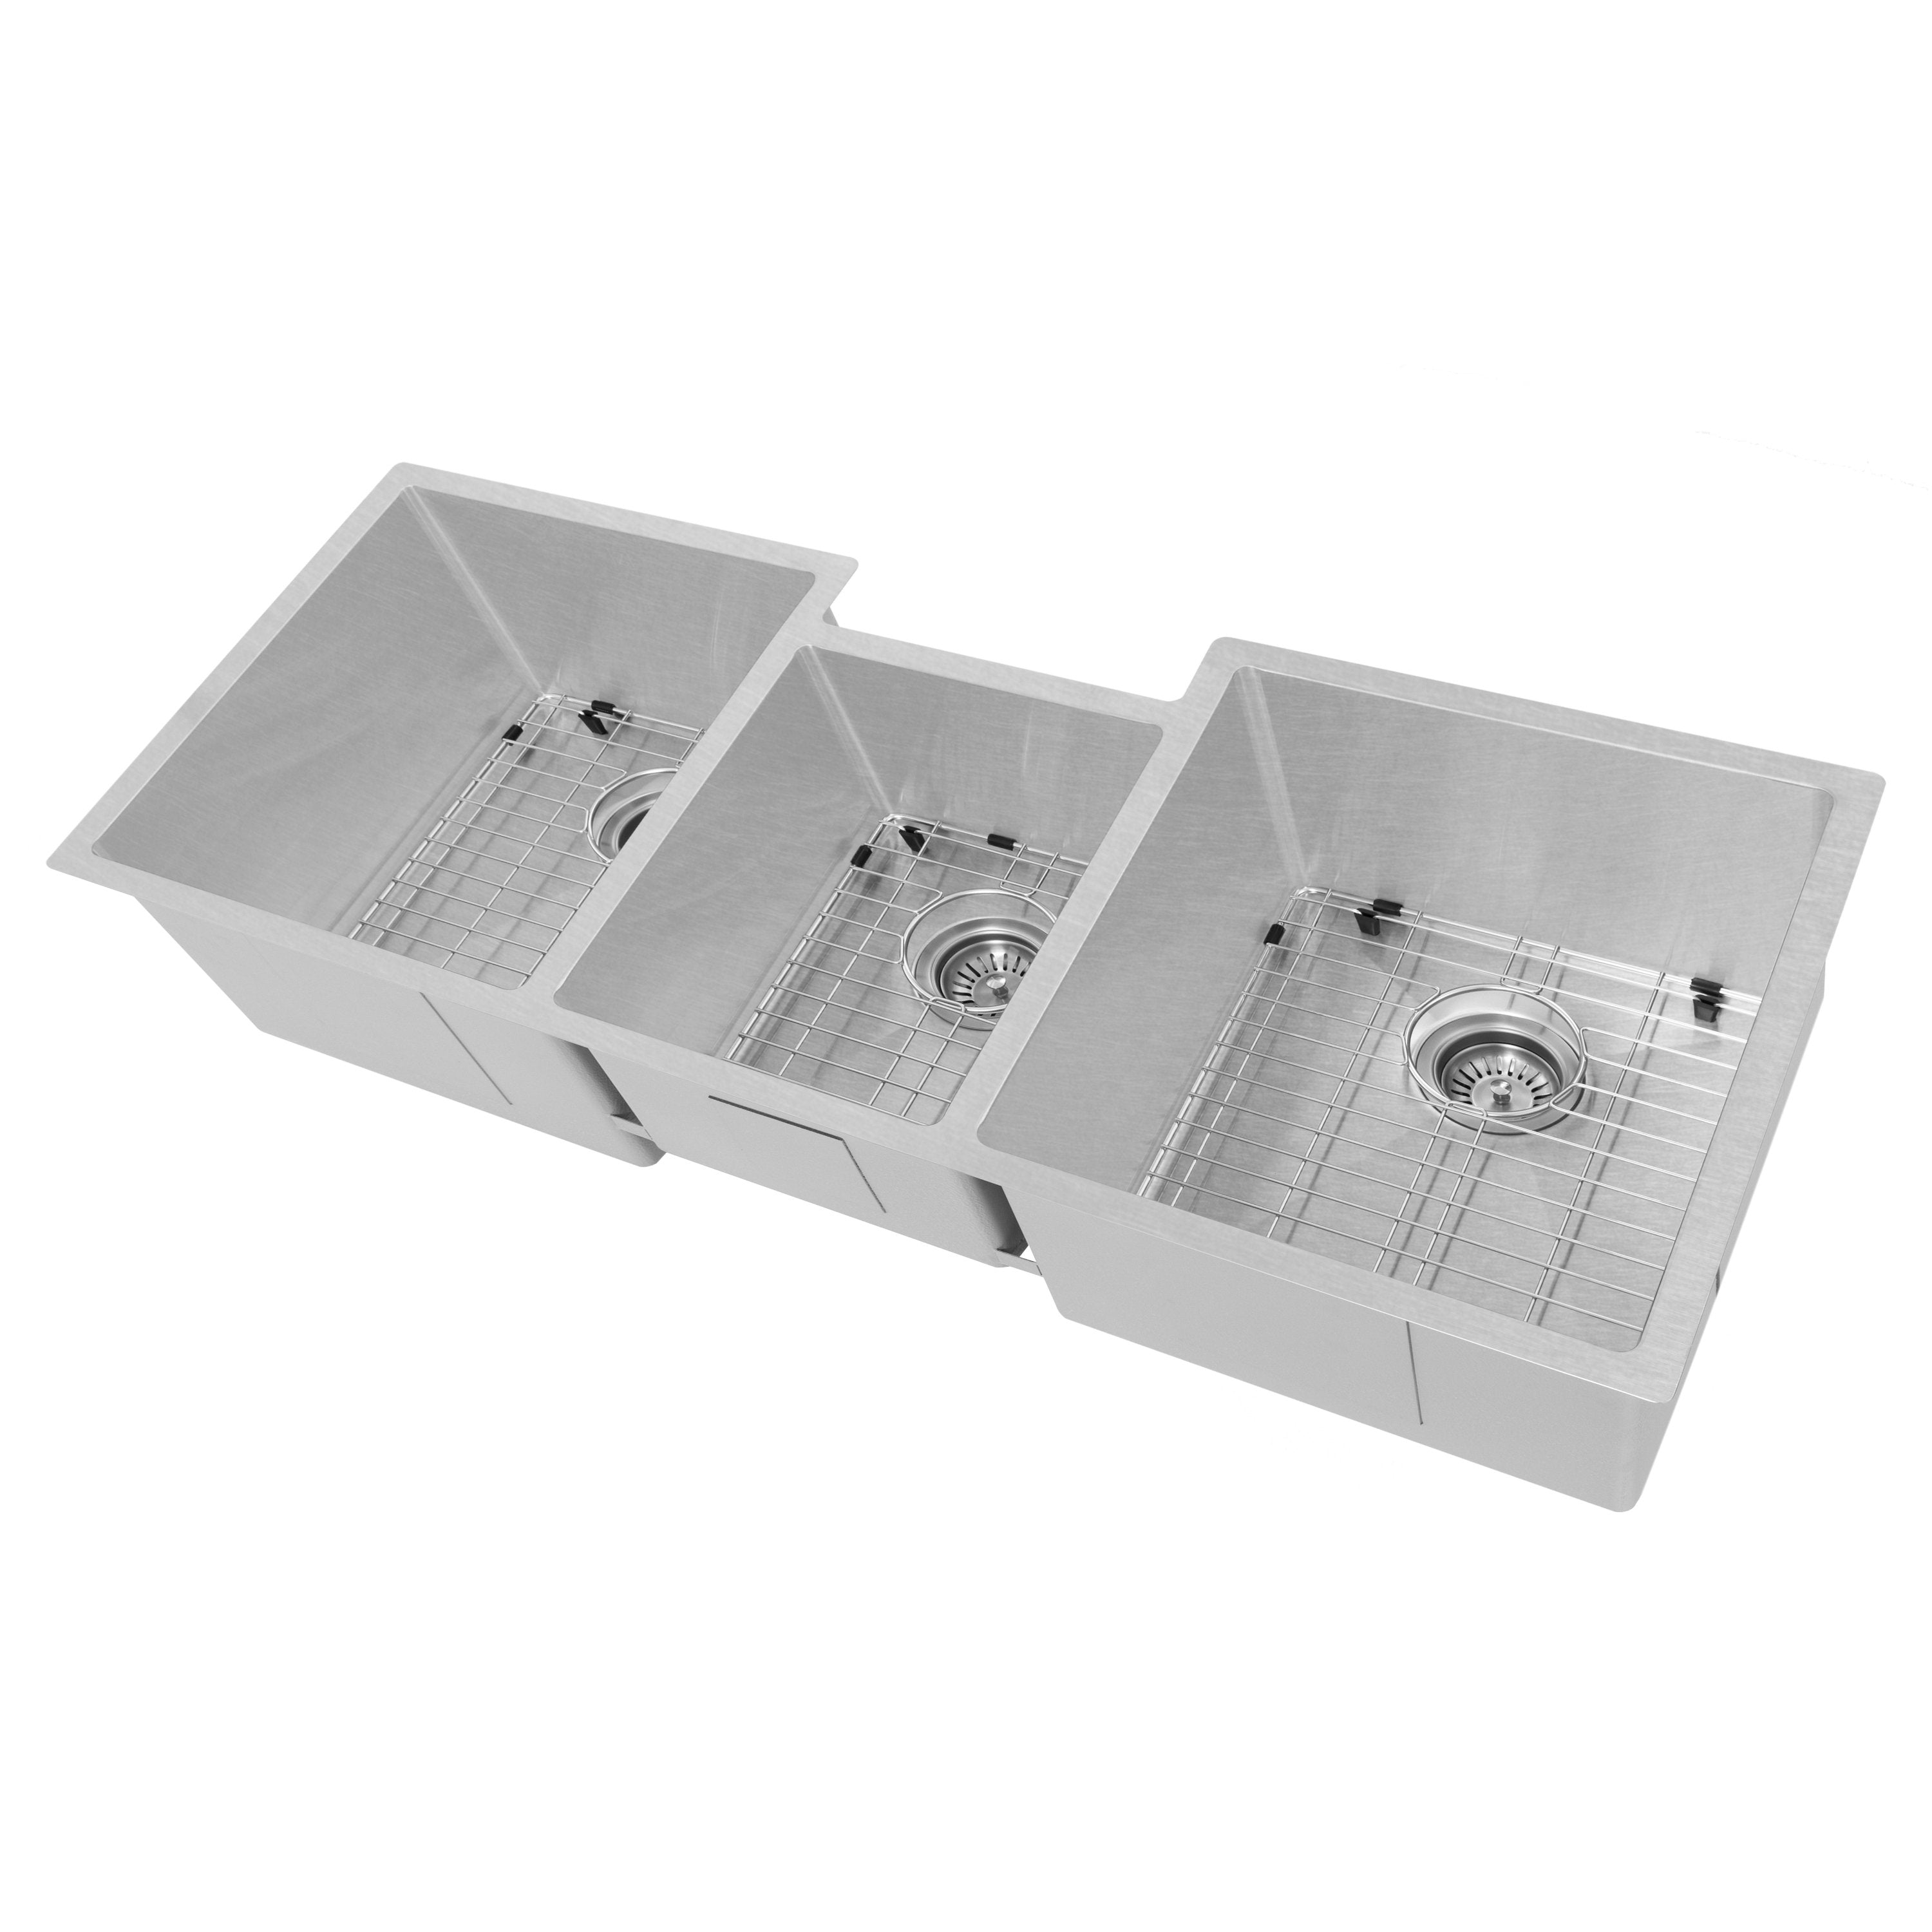 ZLINE Breckenridge Undermount Triple Bowl Stainless Steel Kitchen Sink SLT-45